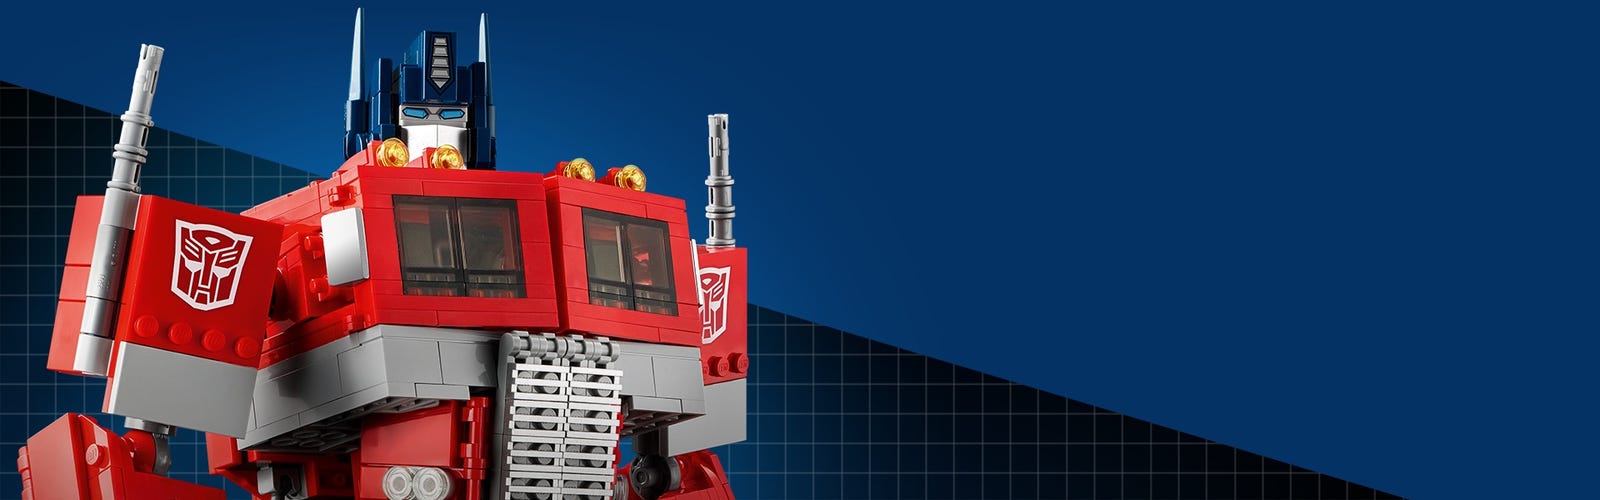 Soldes LEGO Creator Expert - Transformers Optimus Prime (10302